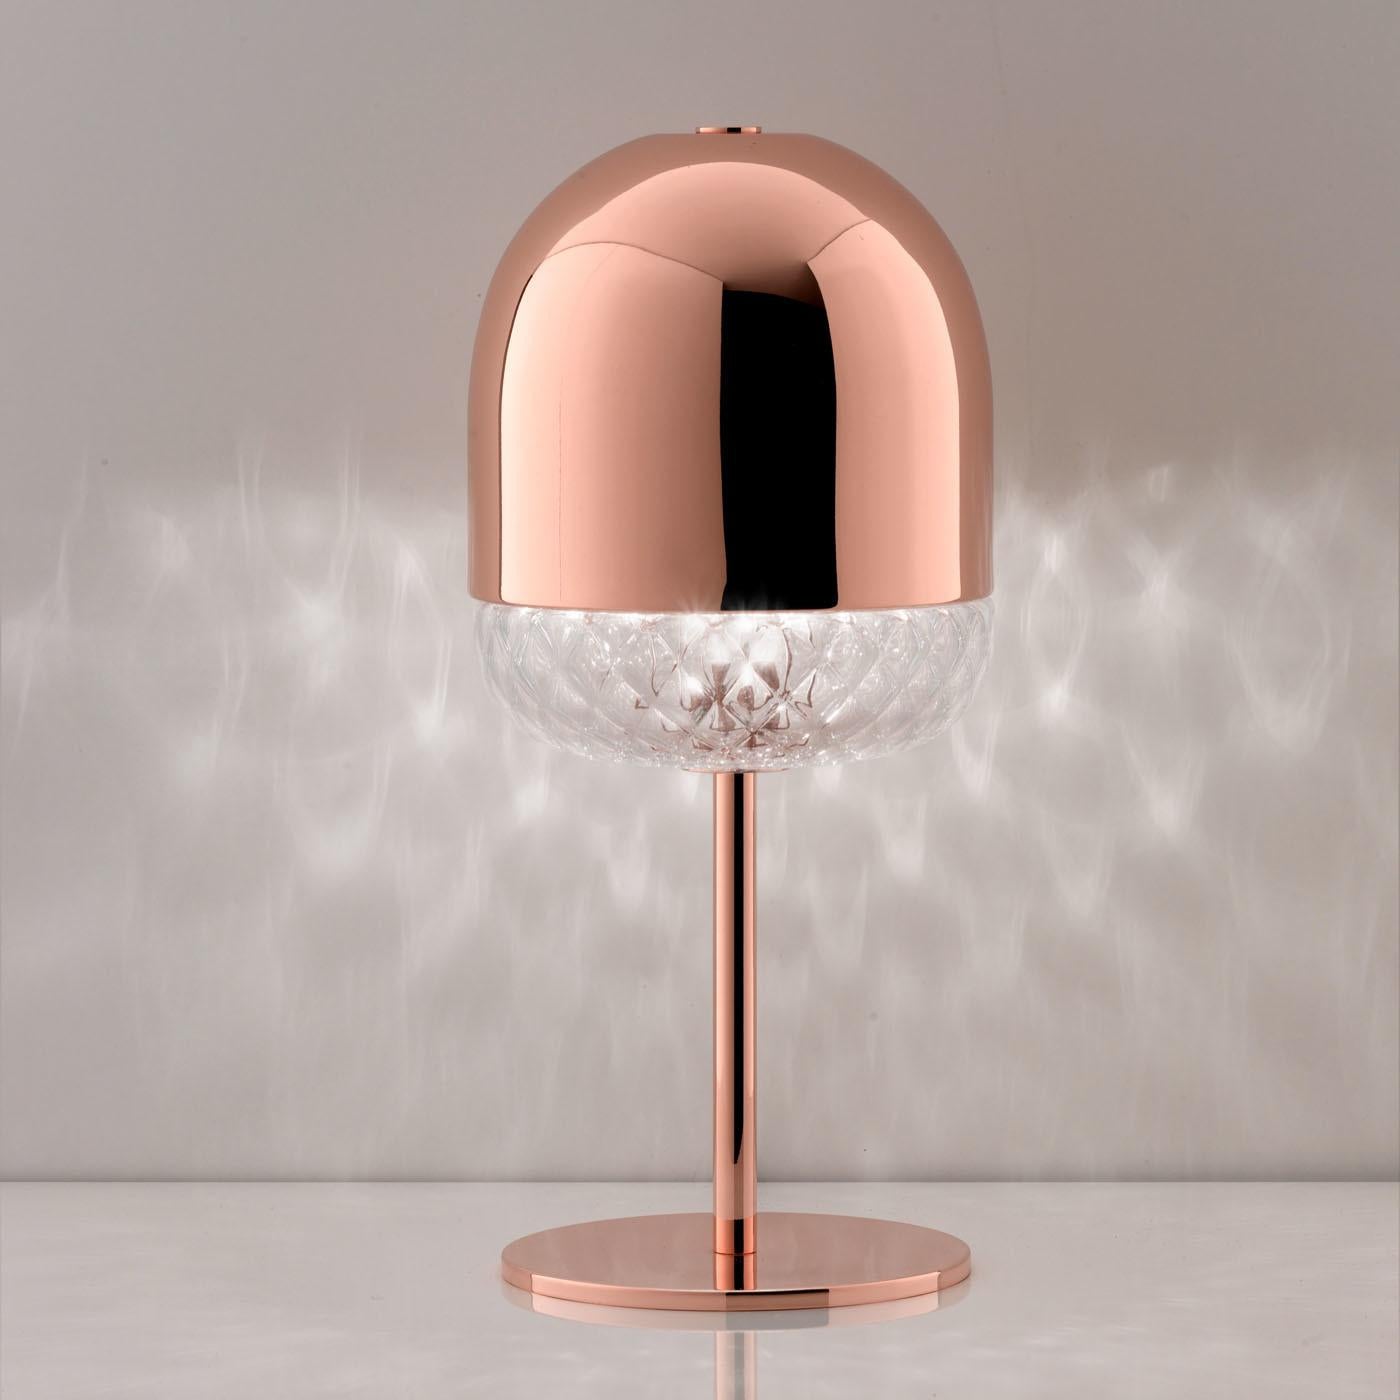 Diese elegante, von Matteo Zorzenoni entworfene Tischleuchte ist von einer der ältesten venezianischen Glasbläsertechniken, dem Balloton, inspiriert. Das Licht dringt durch die Adern des Glases, das den Boden des Schirms ziert. Der obere Teil des